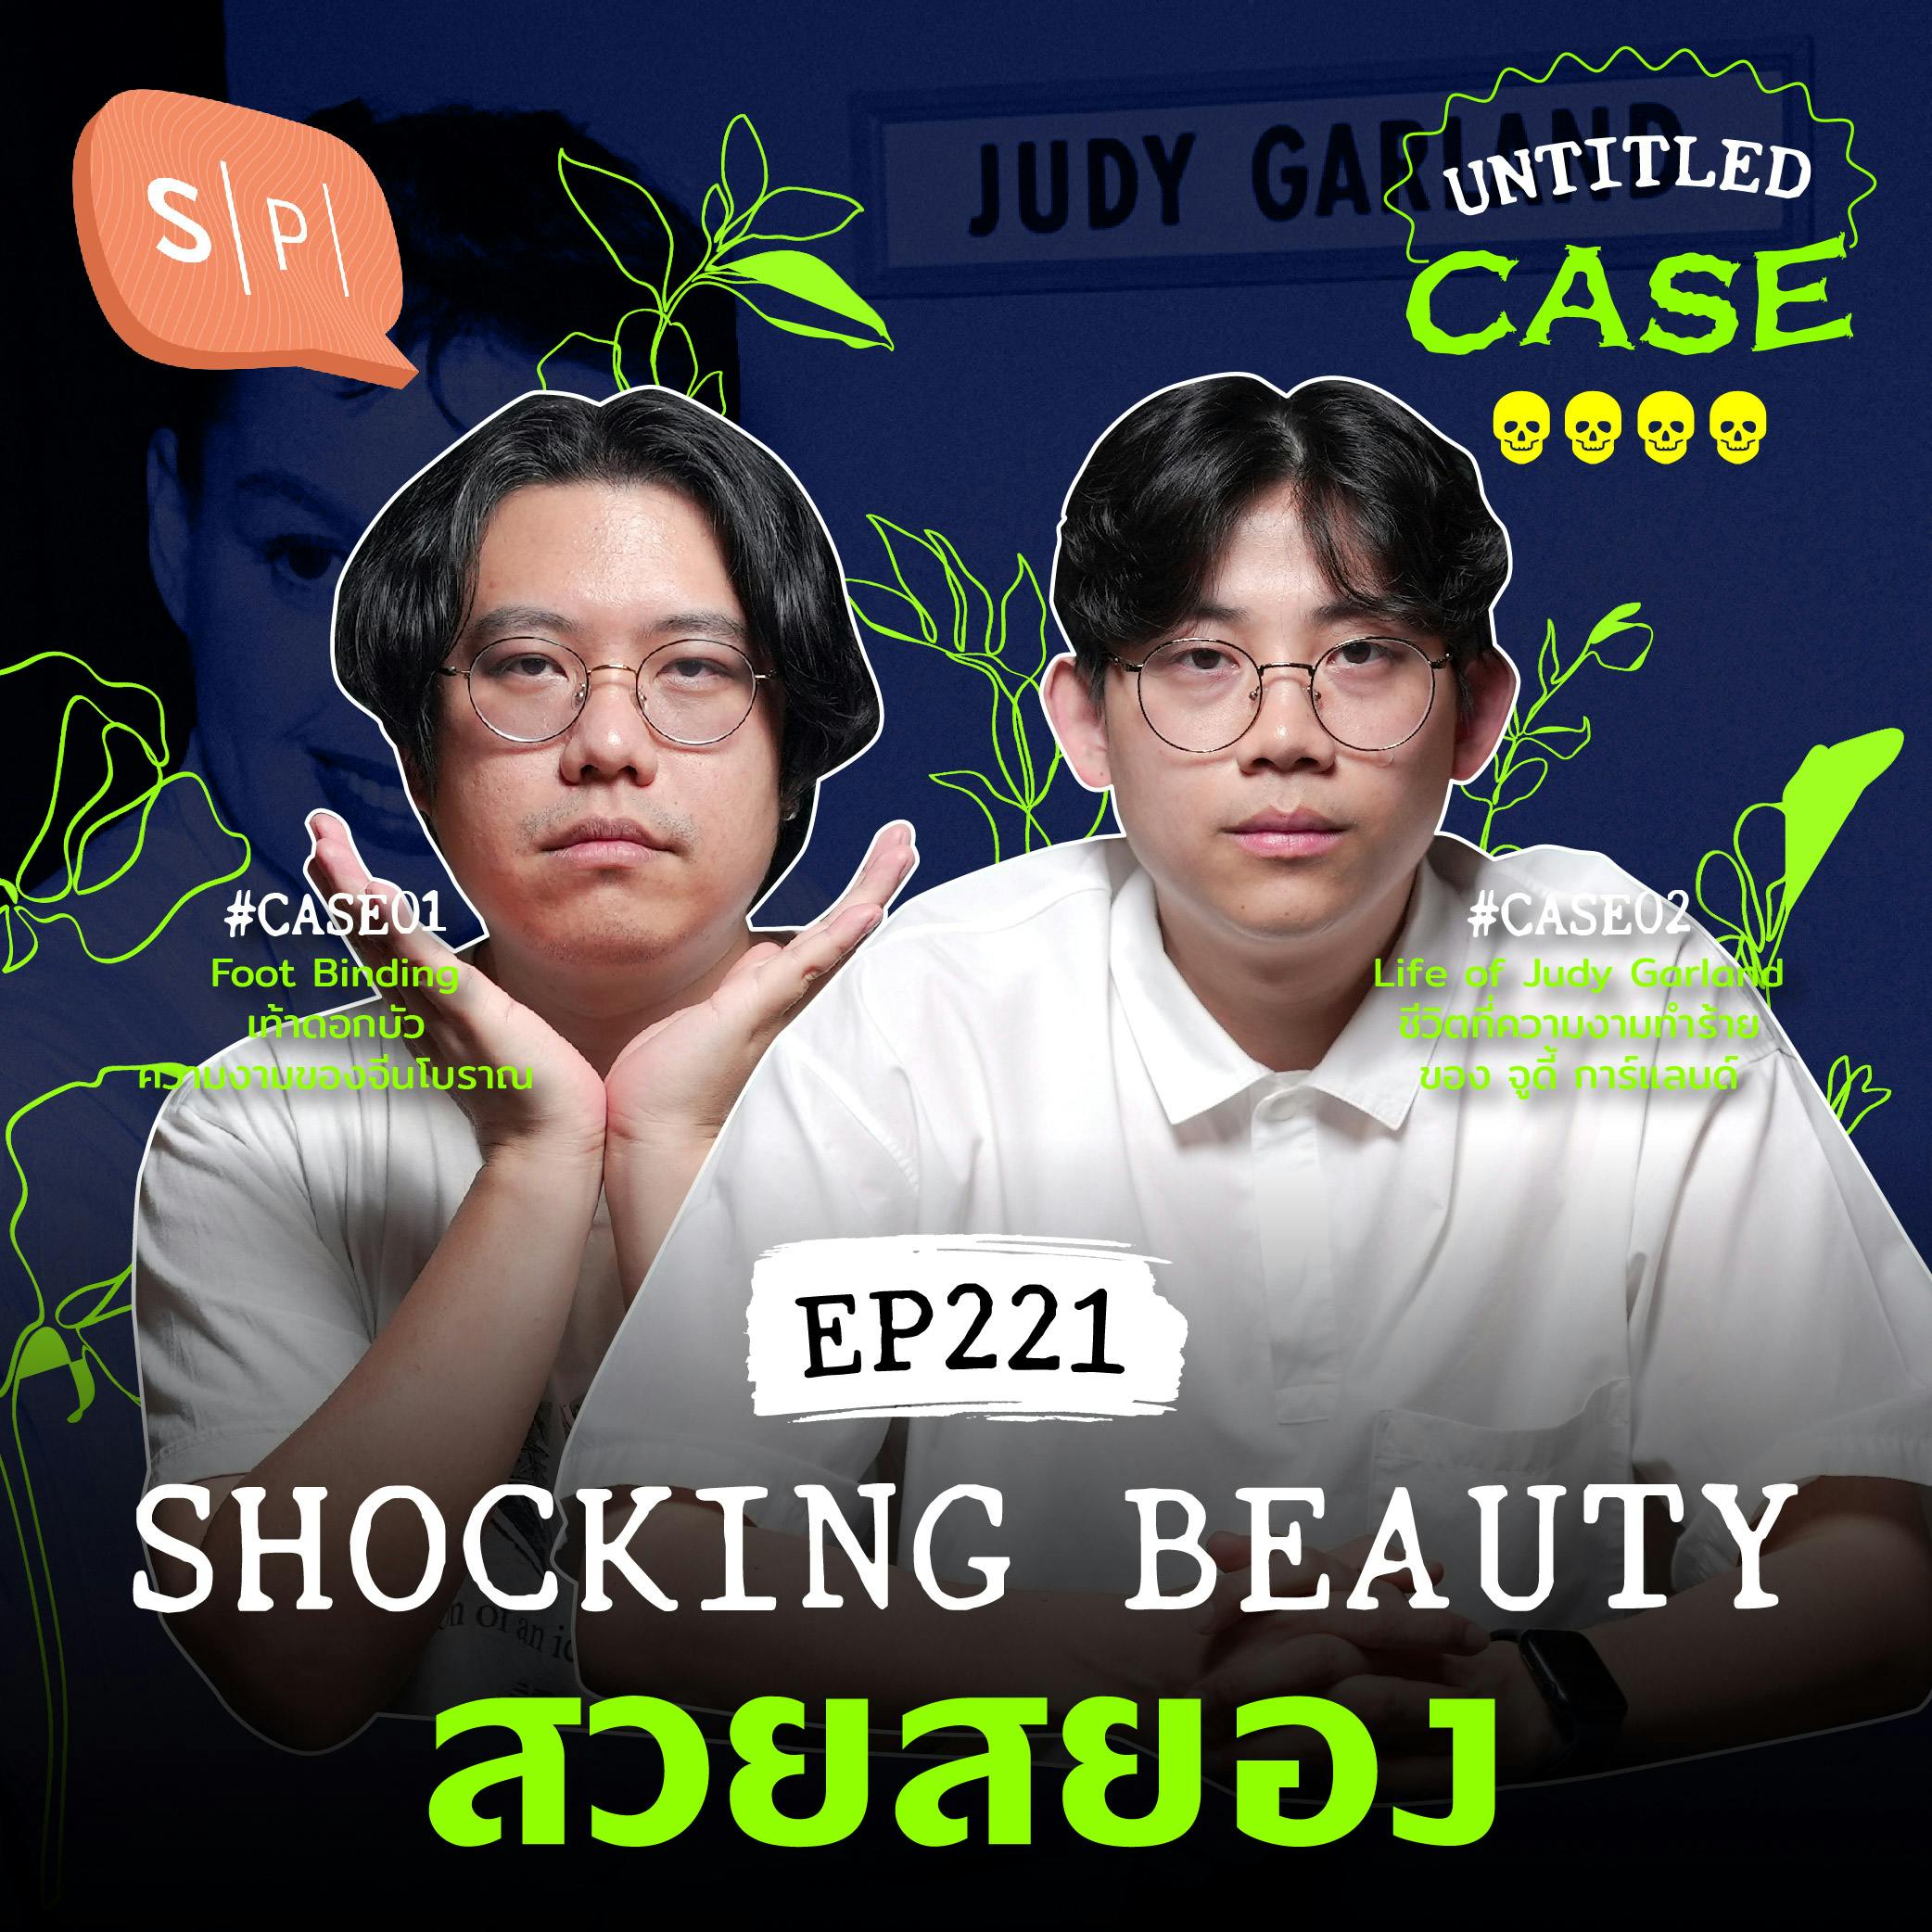 Shocking Beauty สวยสยอง | Untitled Case EP221